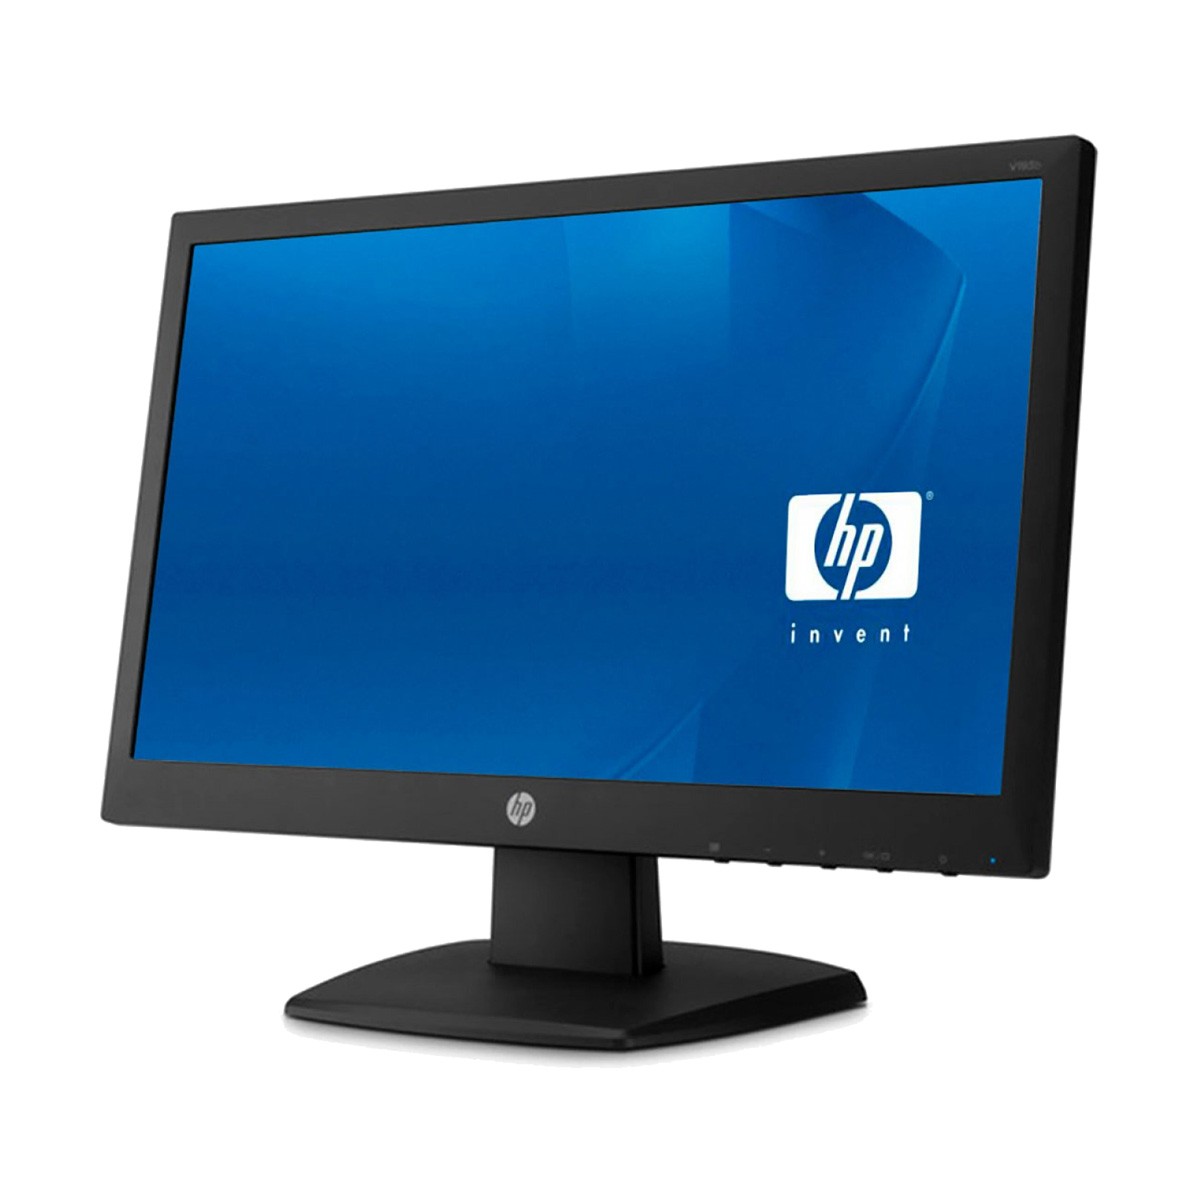 Màn hình HP 19 inch Wide Led giá rẻ cho văn phòng